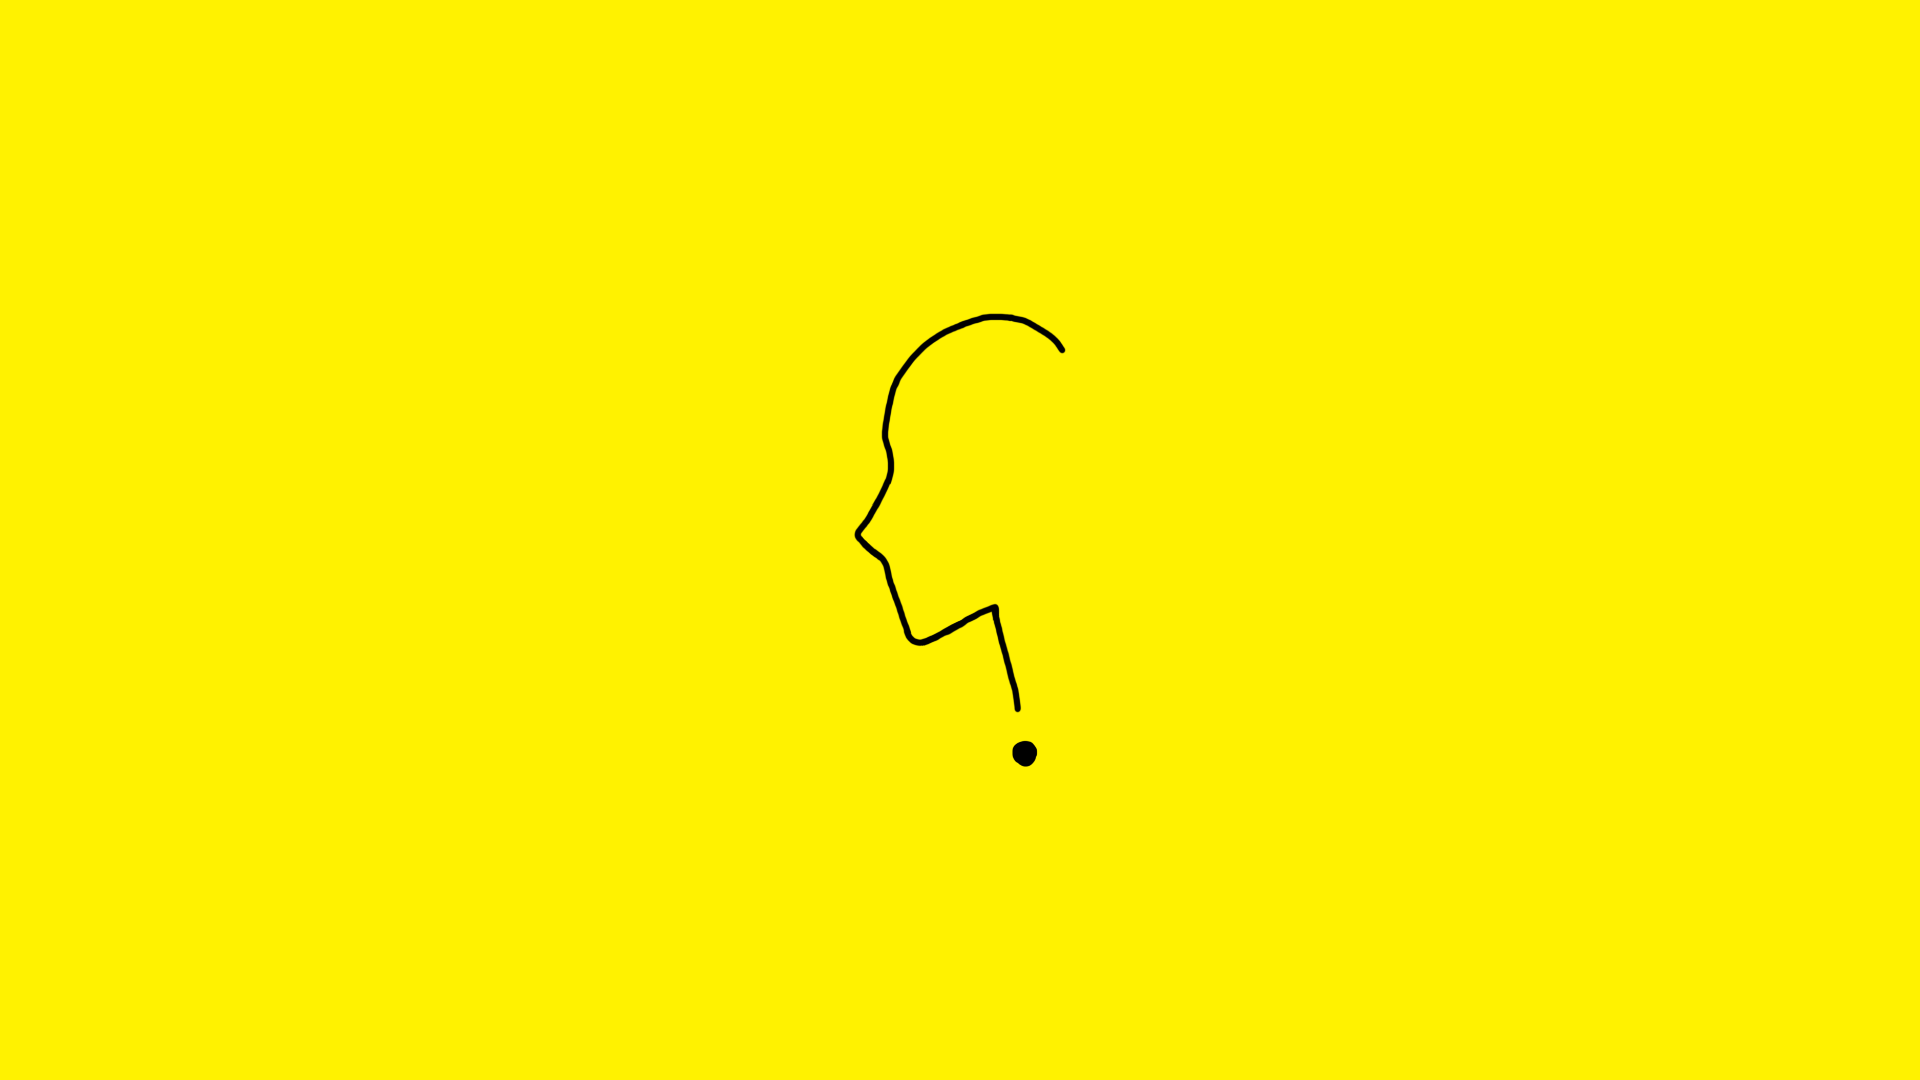 Czarny rysunek obrysu postaci układającej się w kształt znaku zapytania na żółtym tle